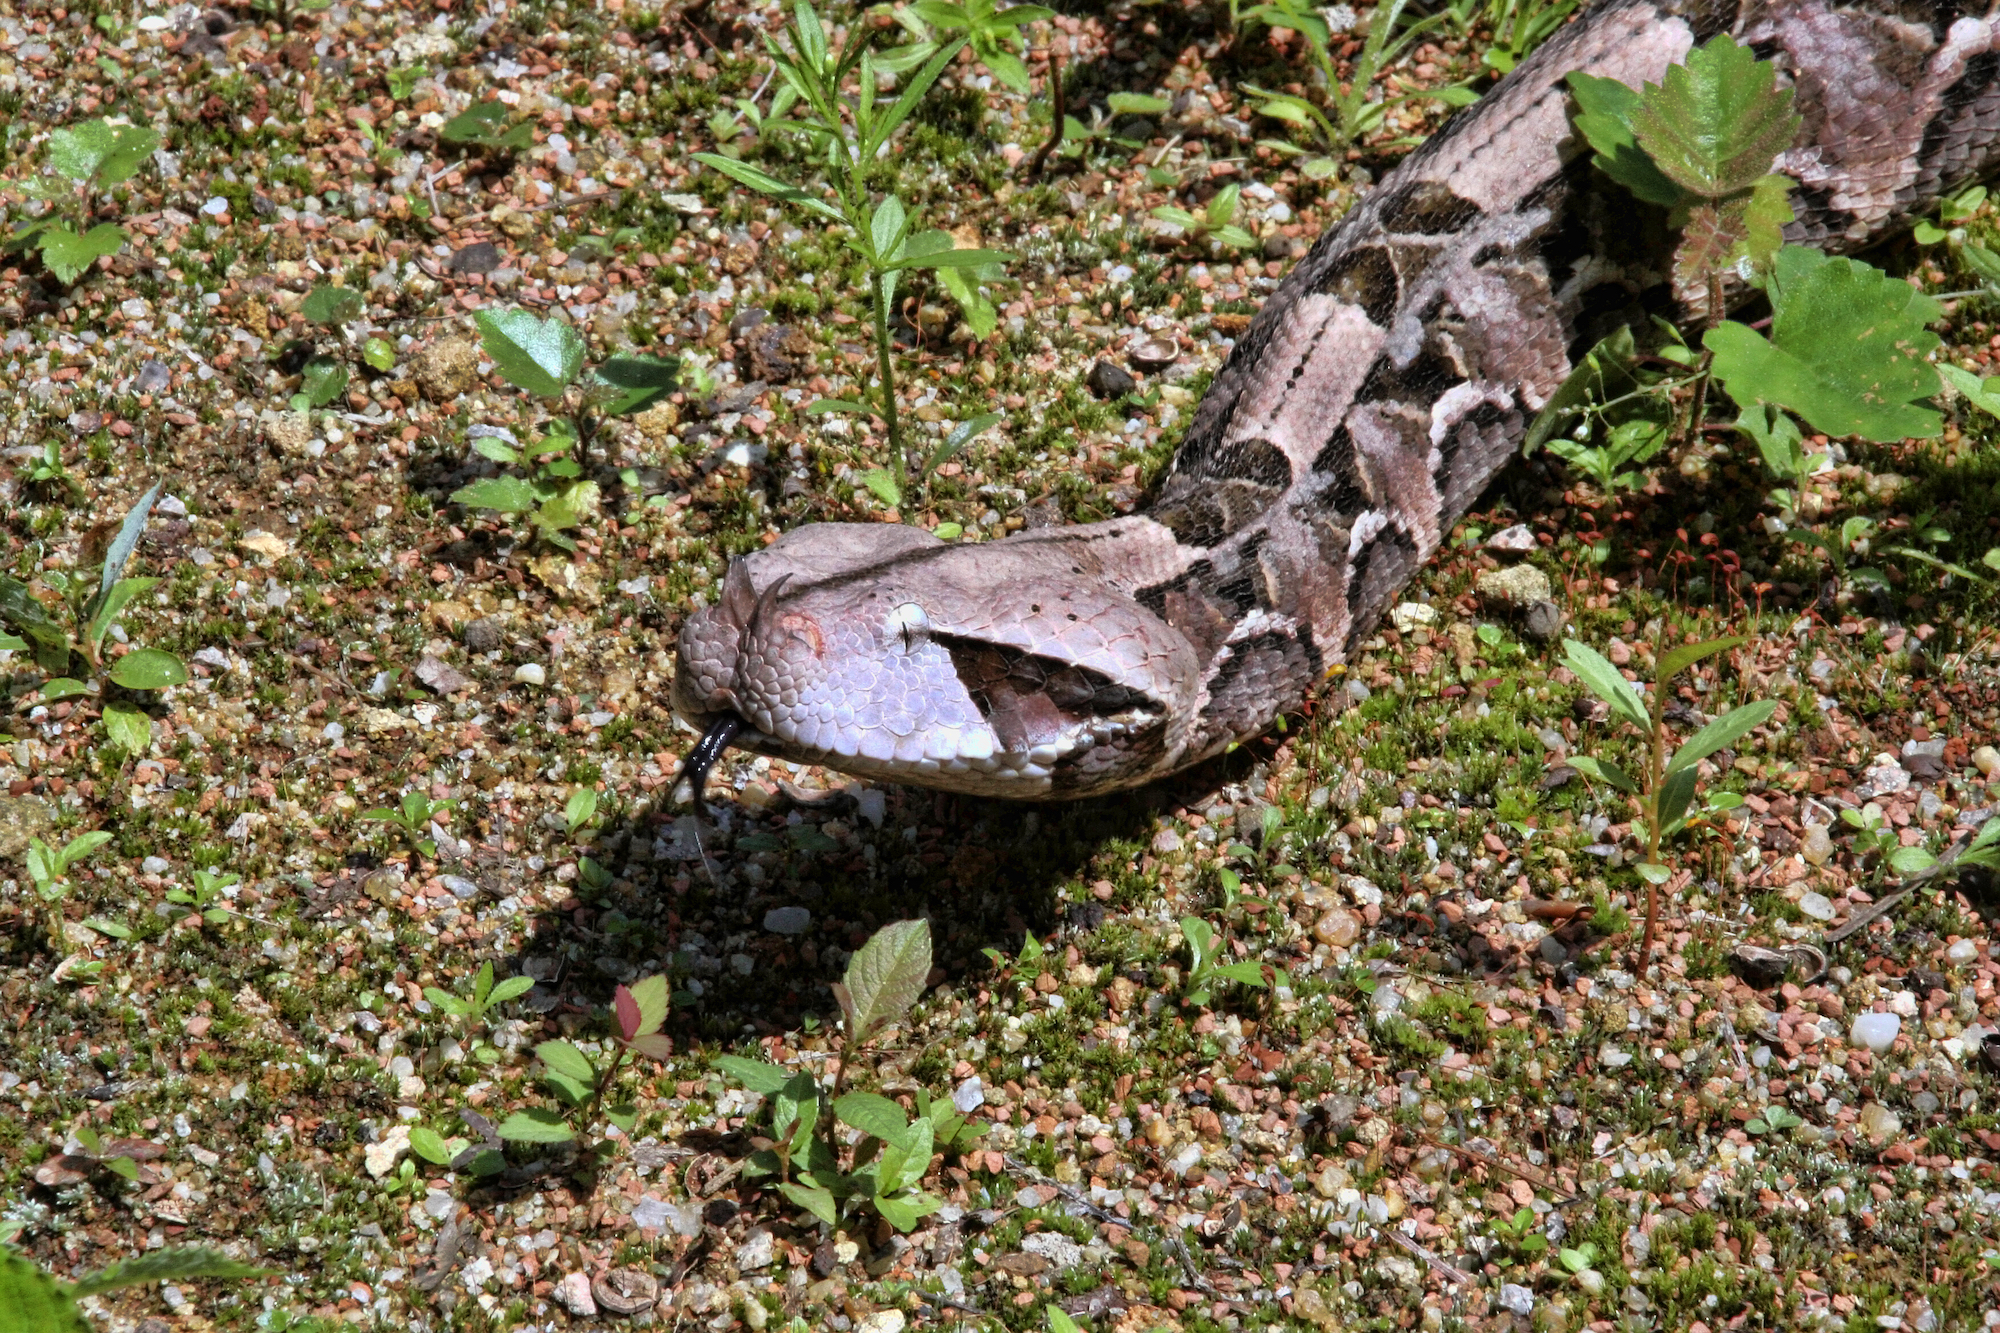 La vipère du Gabon possède les crochets les plus longs de tous les serpents venimeux de la planète